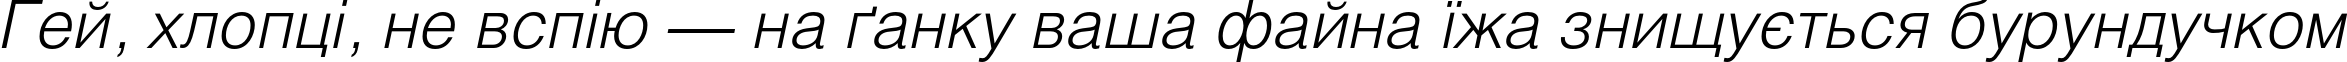 Пример написания шрифтом HeliosLight Italic текста на украинском